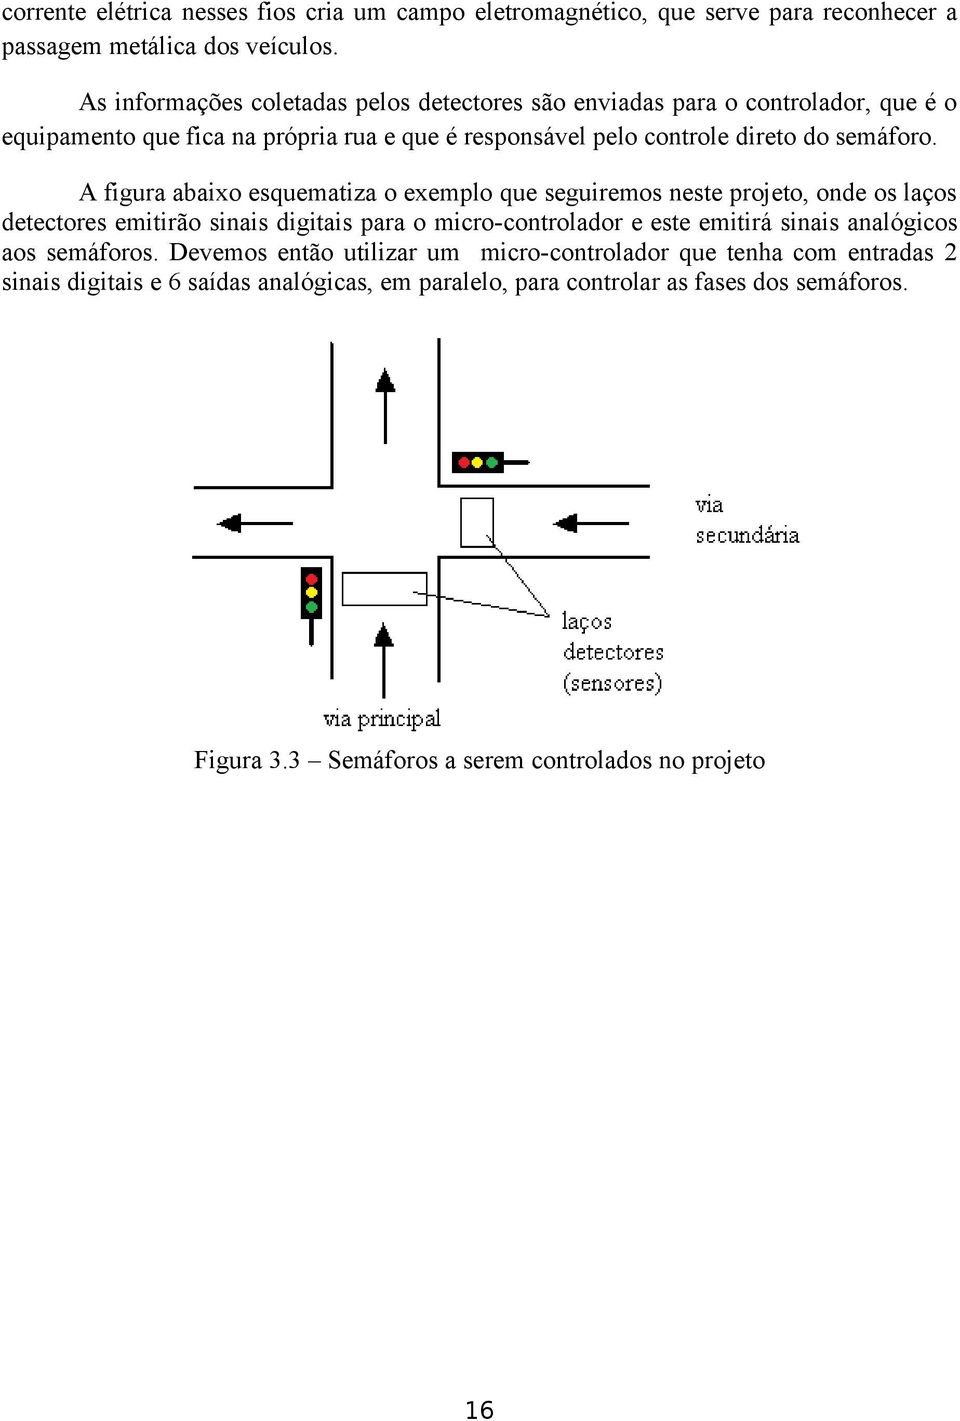 A figura abaixo esquematiza o exemplo que seguiremos neste projeto, onde os laços detectores emitirão sinais digitais para o micro-controlador e este emitirá sinais